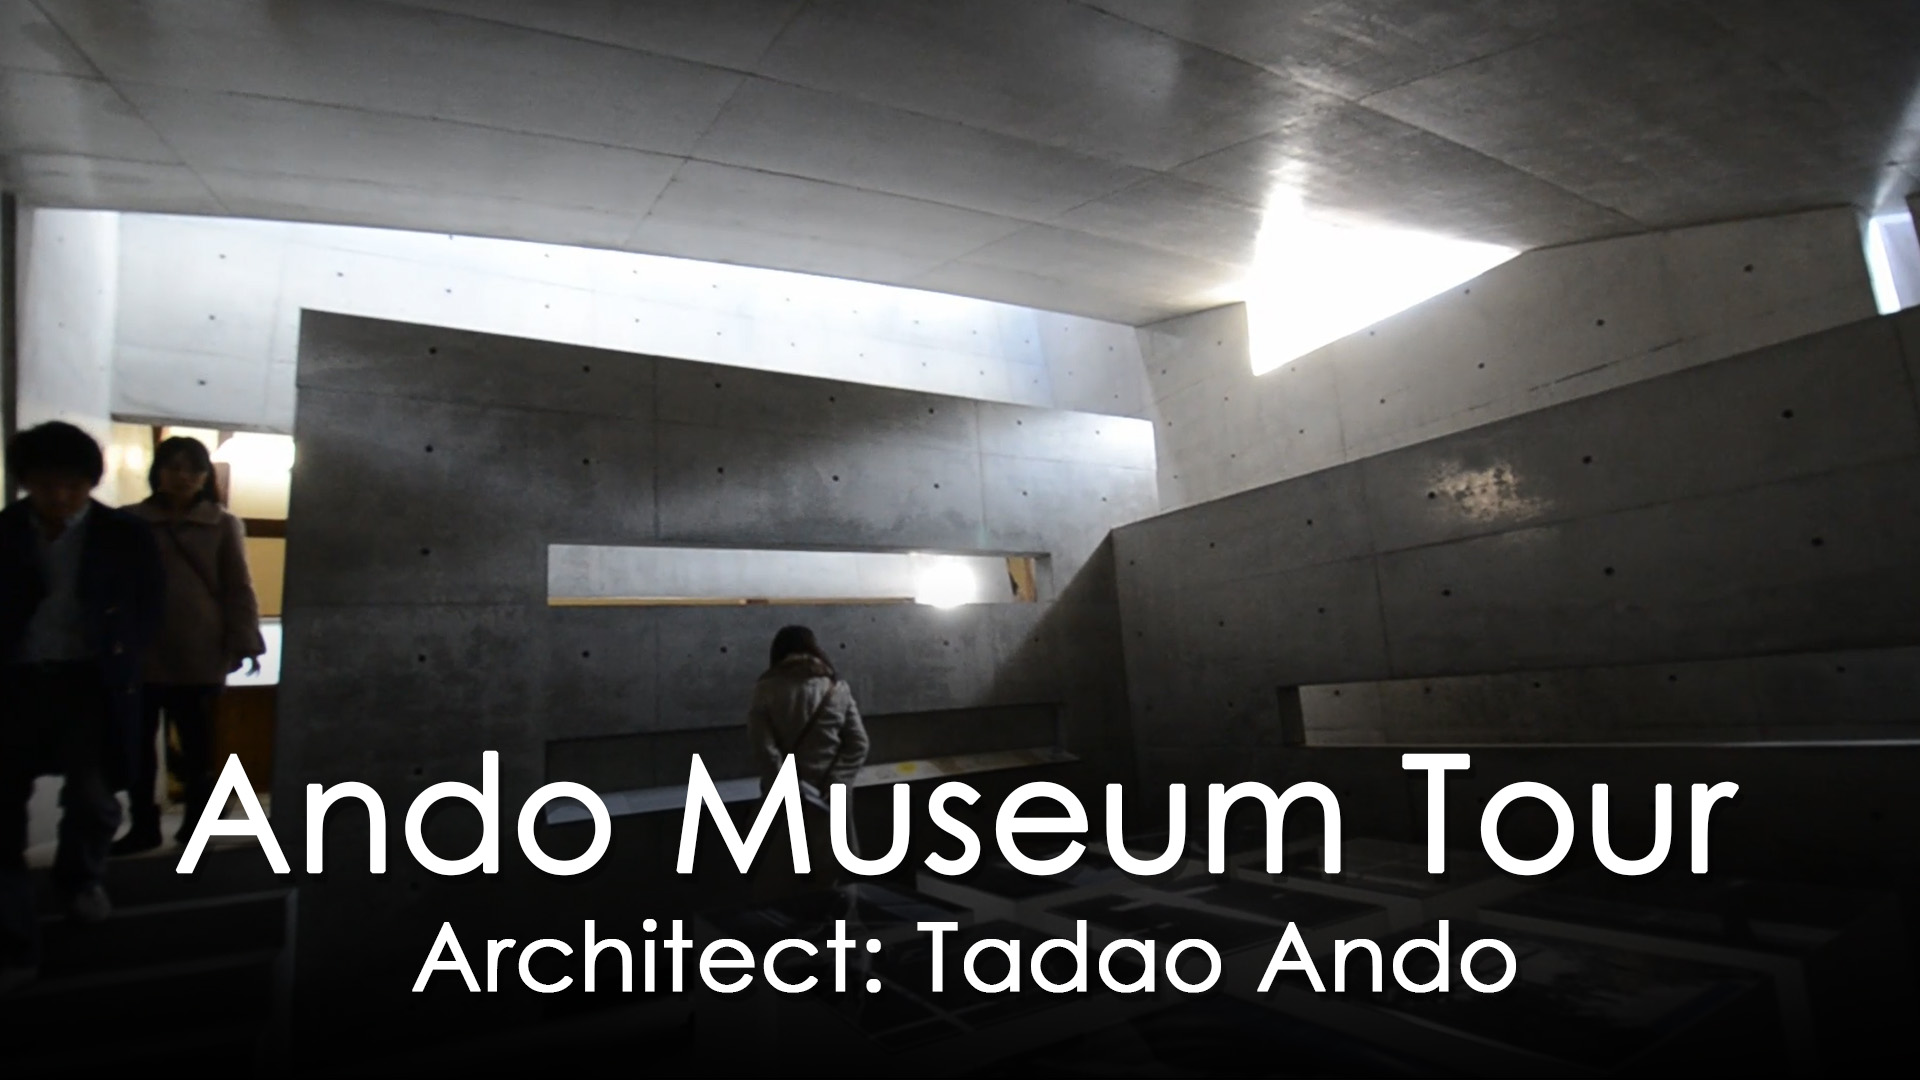 Tadao Ando : Ando Museum